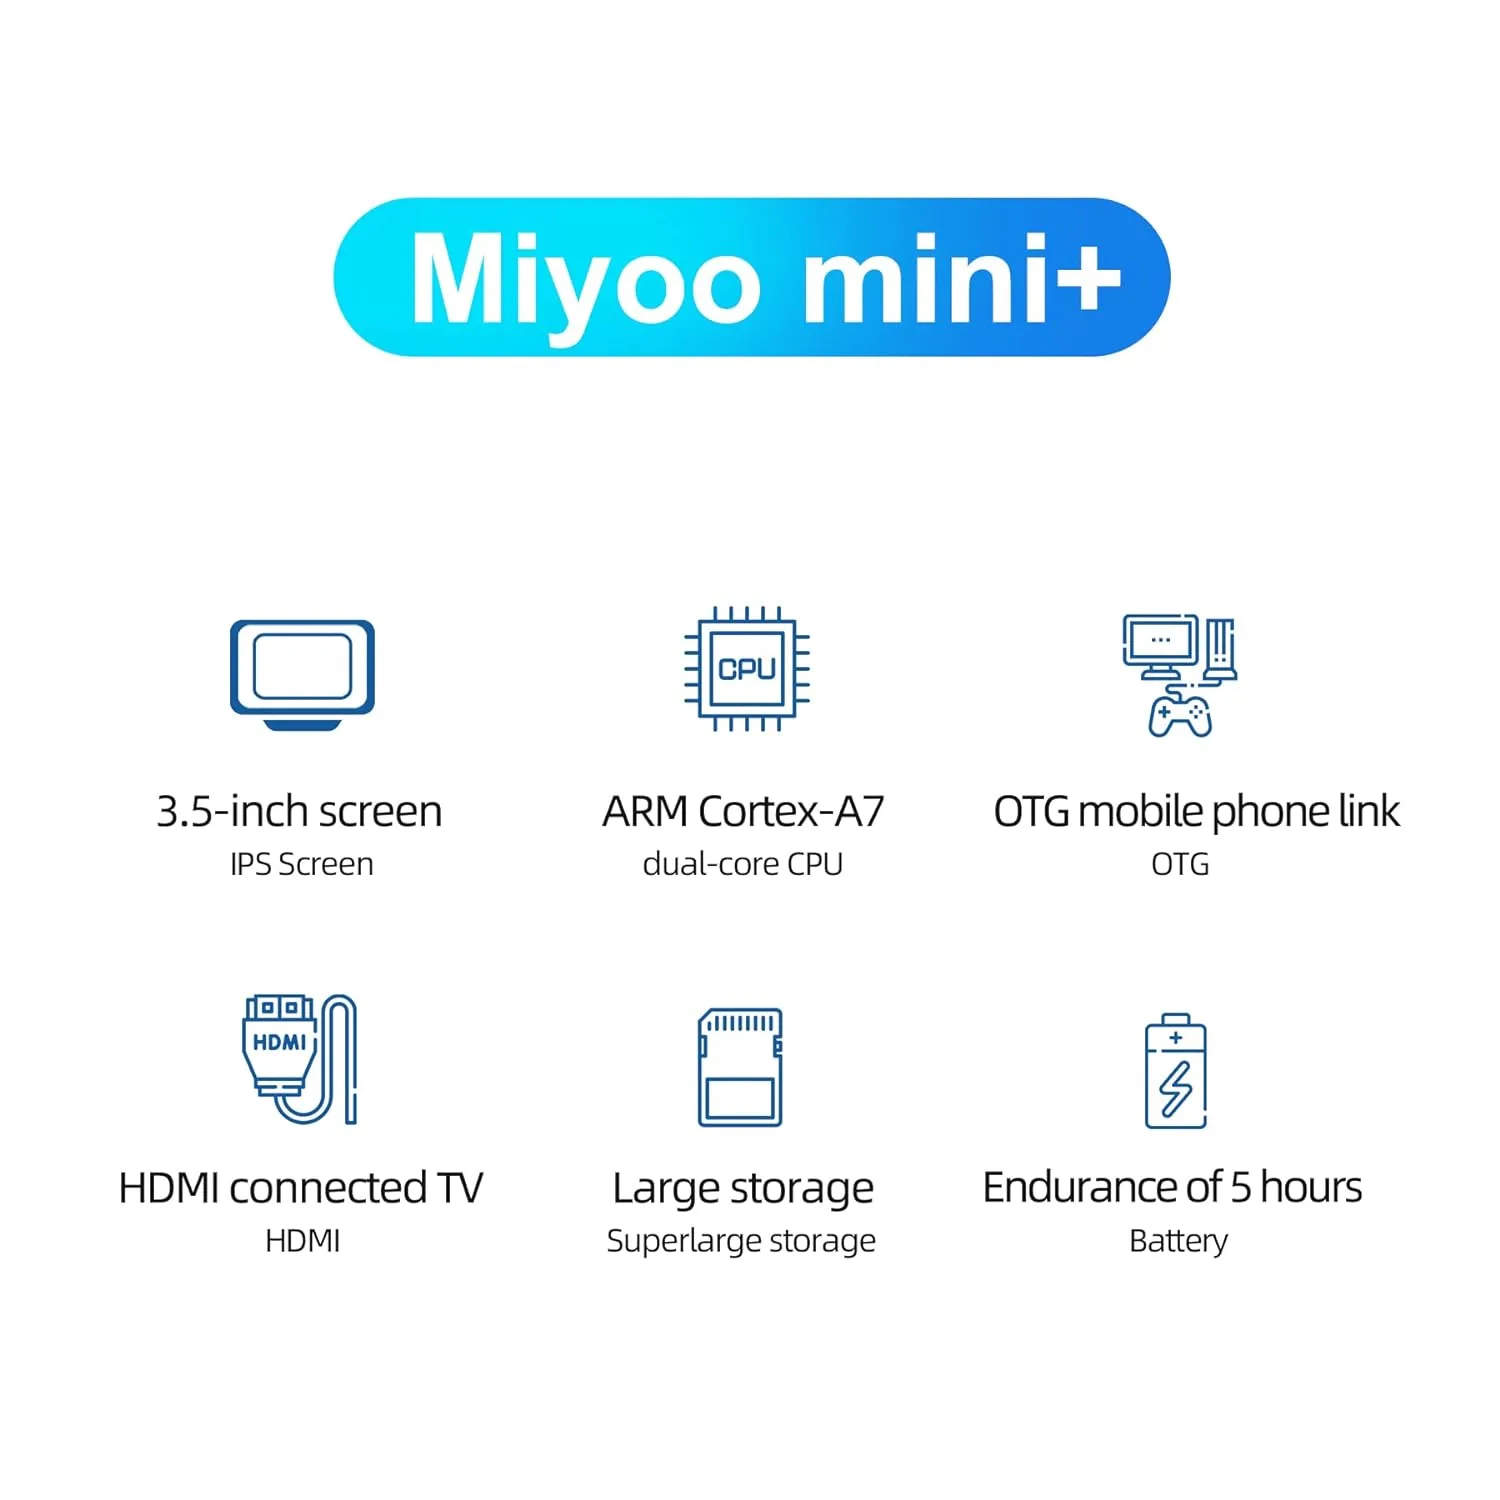 miyoo mini